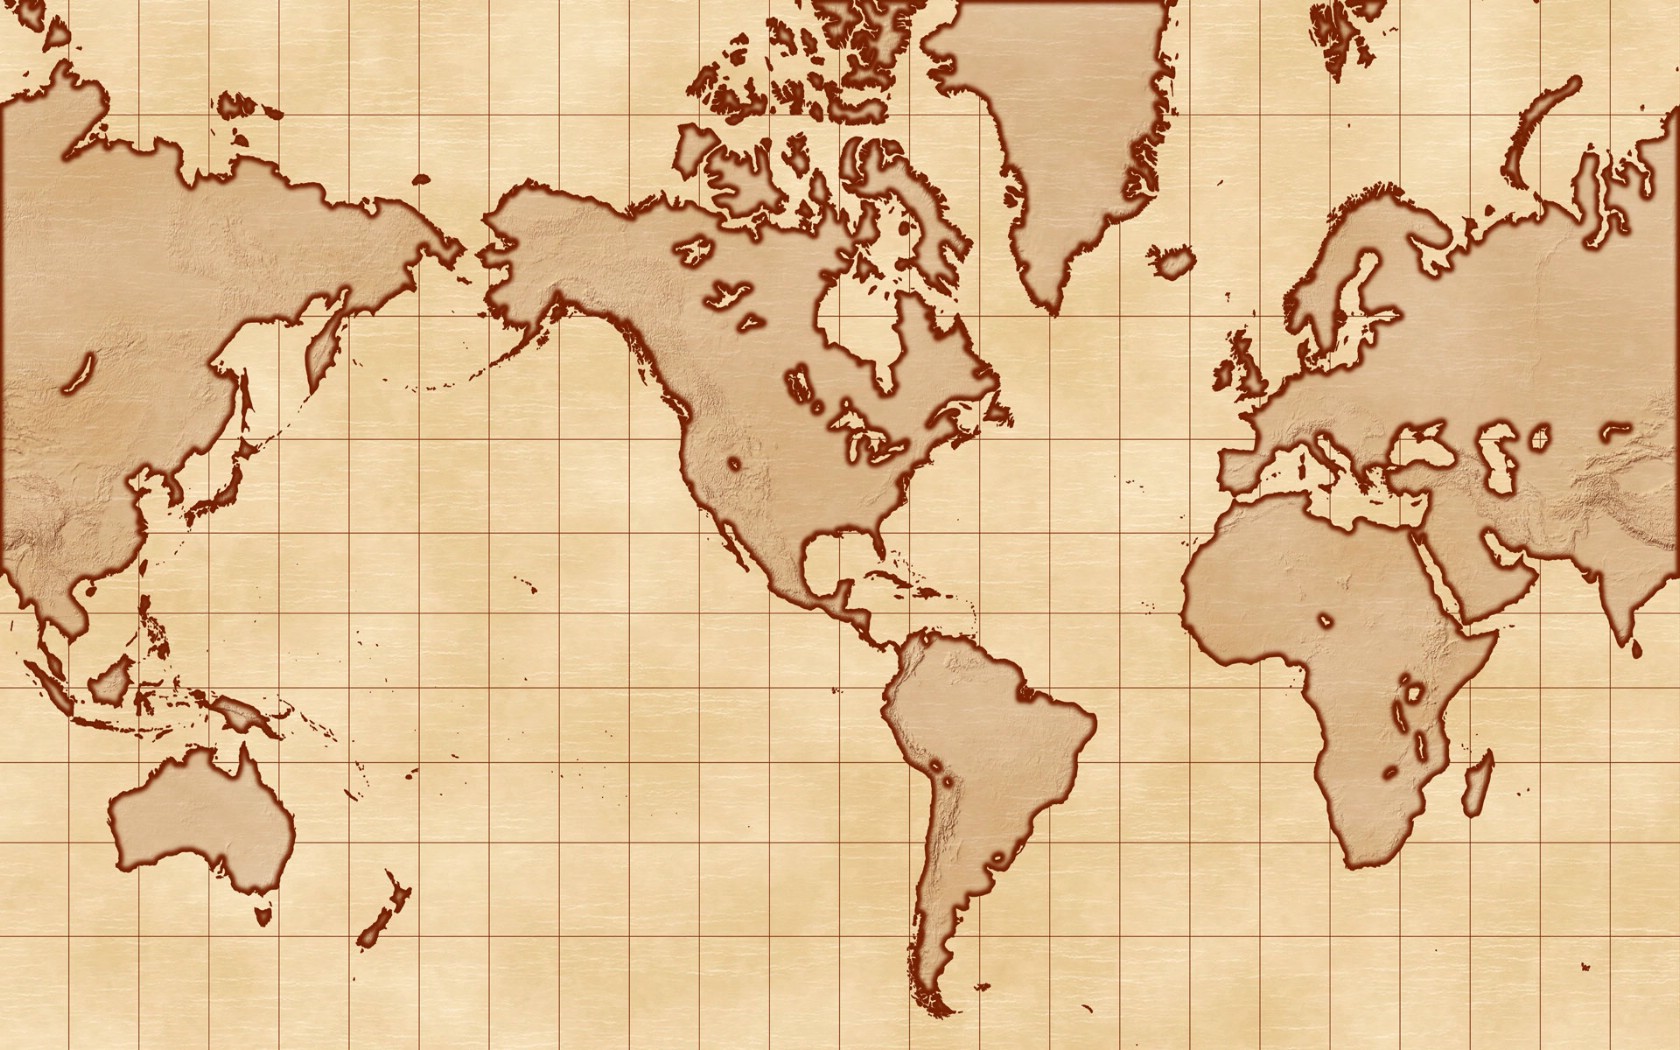 壁纸1680x1050地图 我们的地球壁纸壁纸 地图！我们的地球壁纸壁纸 地图！我们的地球壁纸图片 地图！我们的地球壁纸素材 创意壁纸 创意图库 创意图片素材桌面壁纸